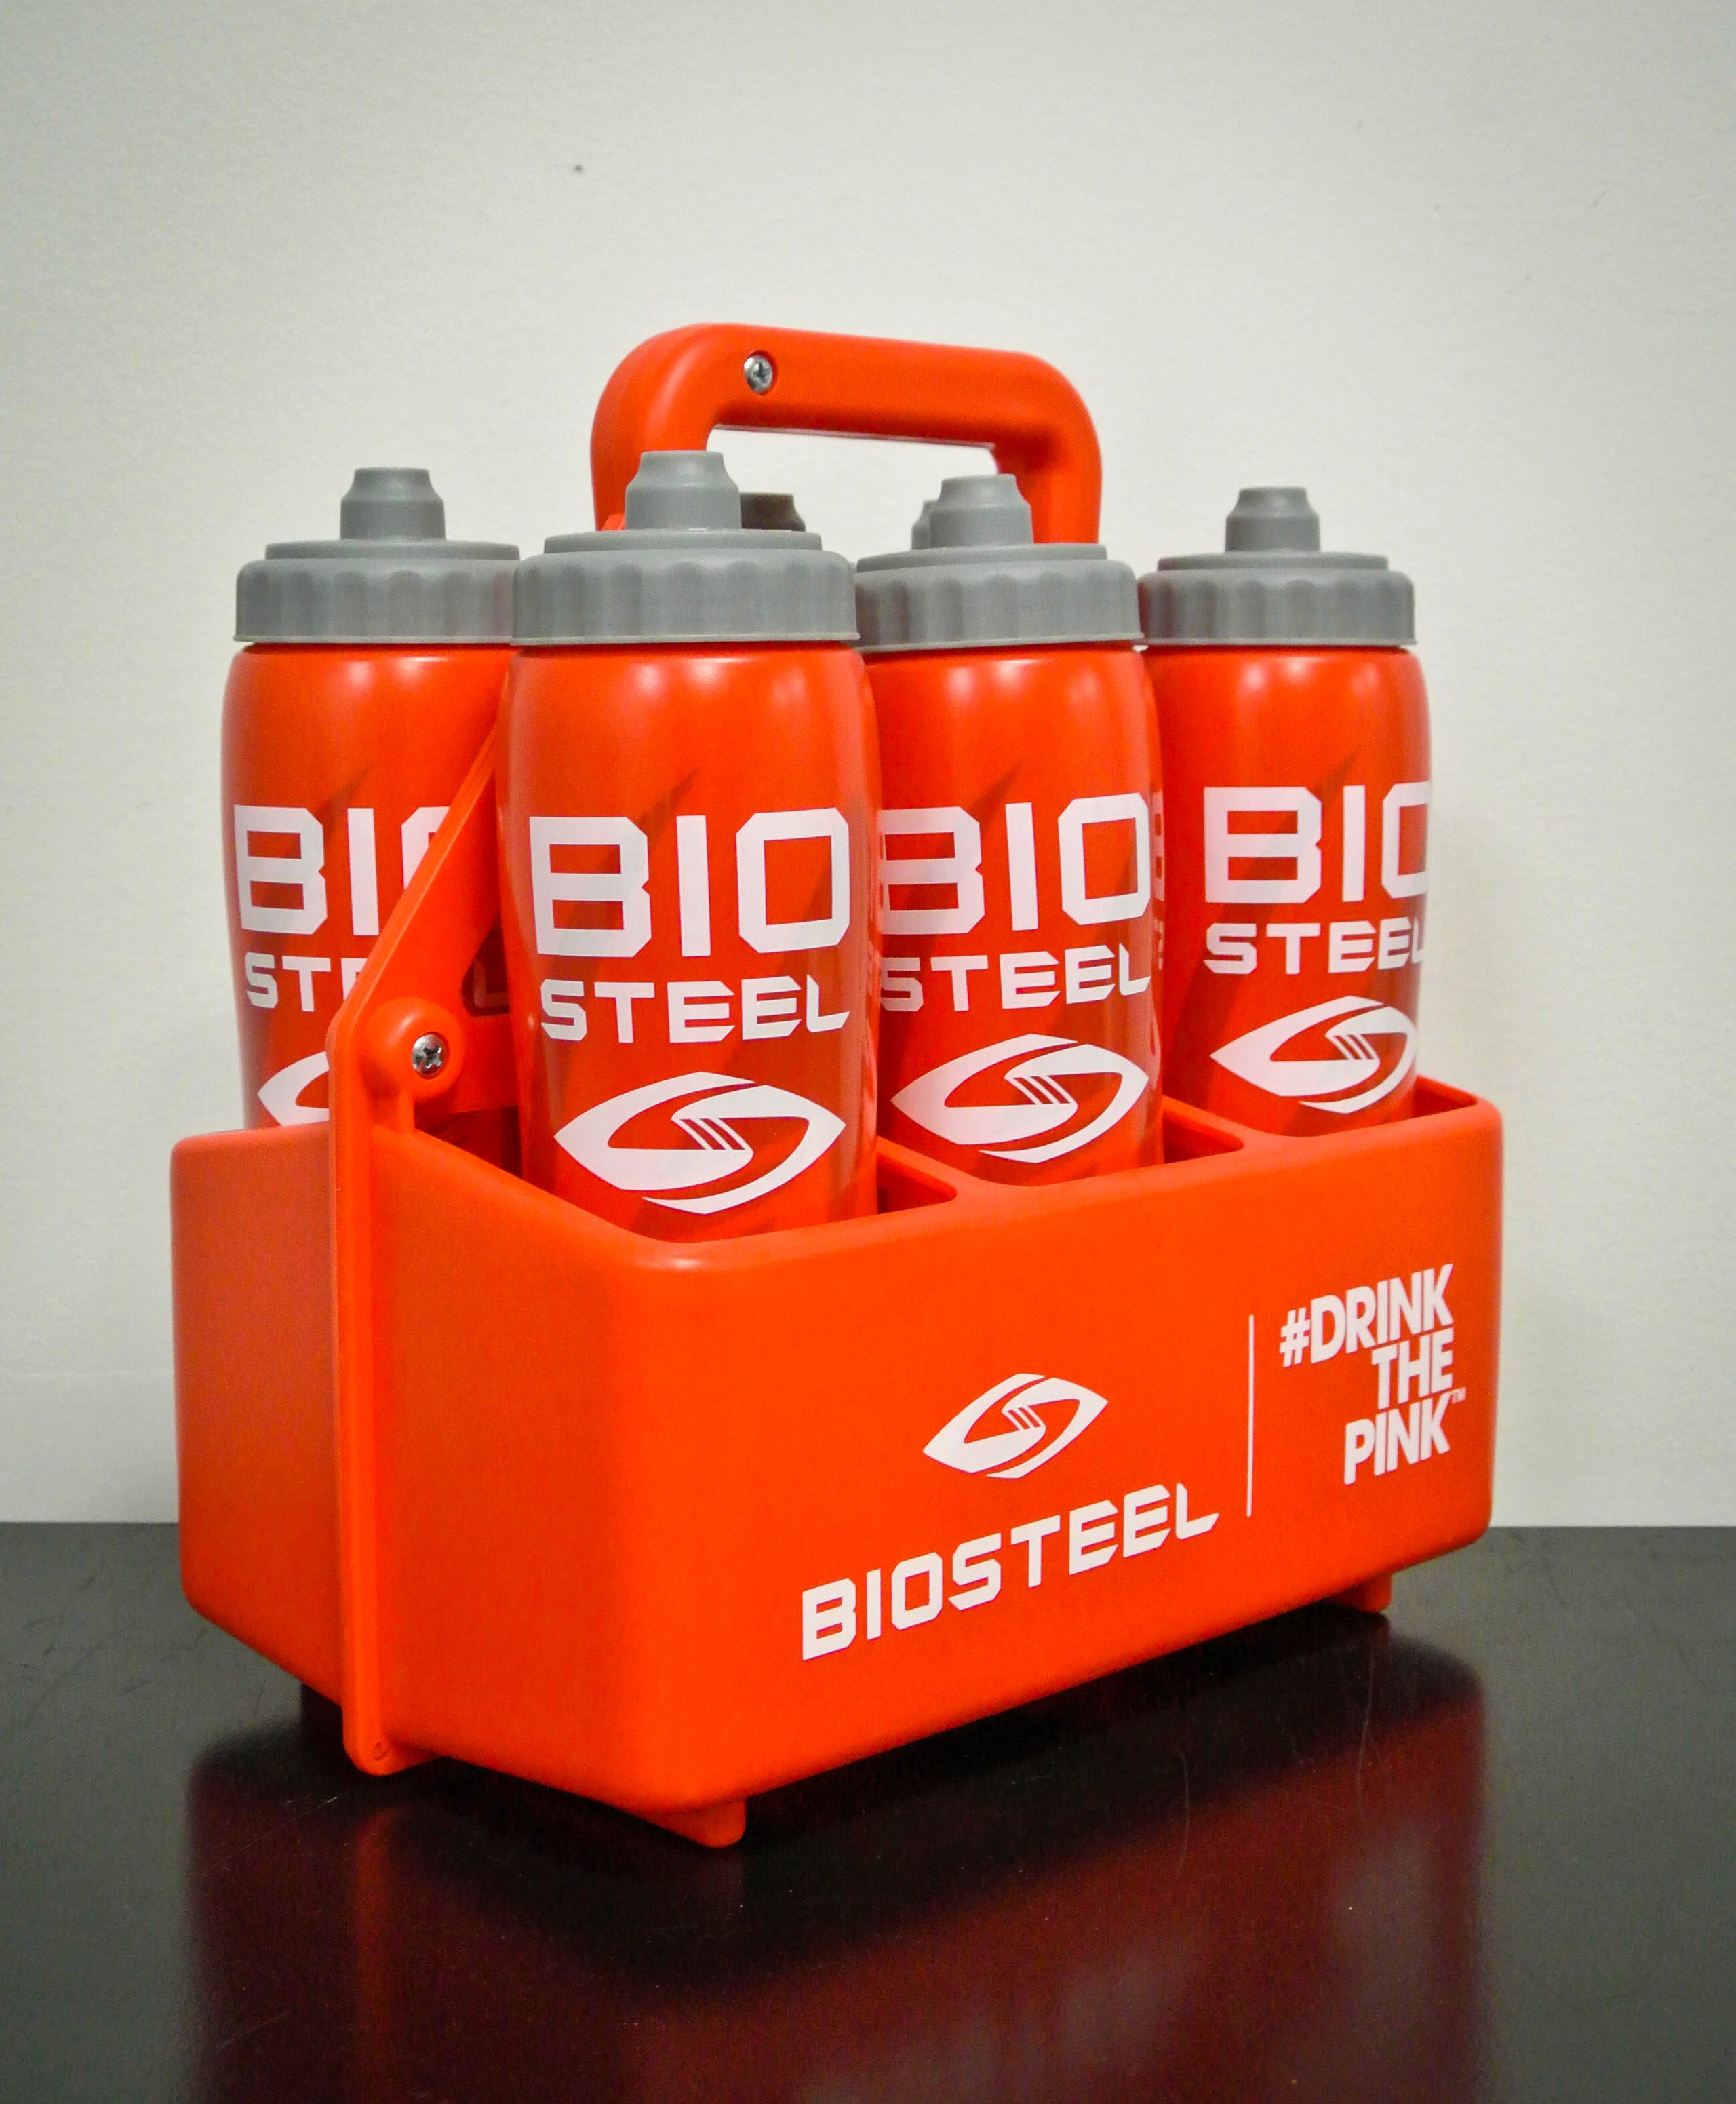 Biosteel Team Water Bottle Carrier